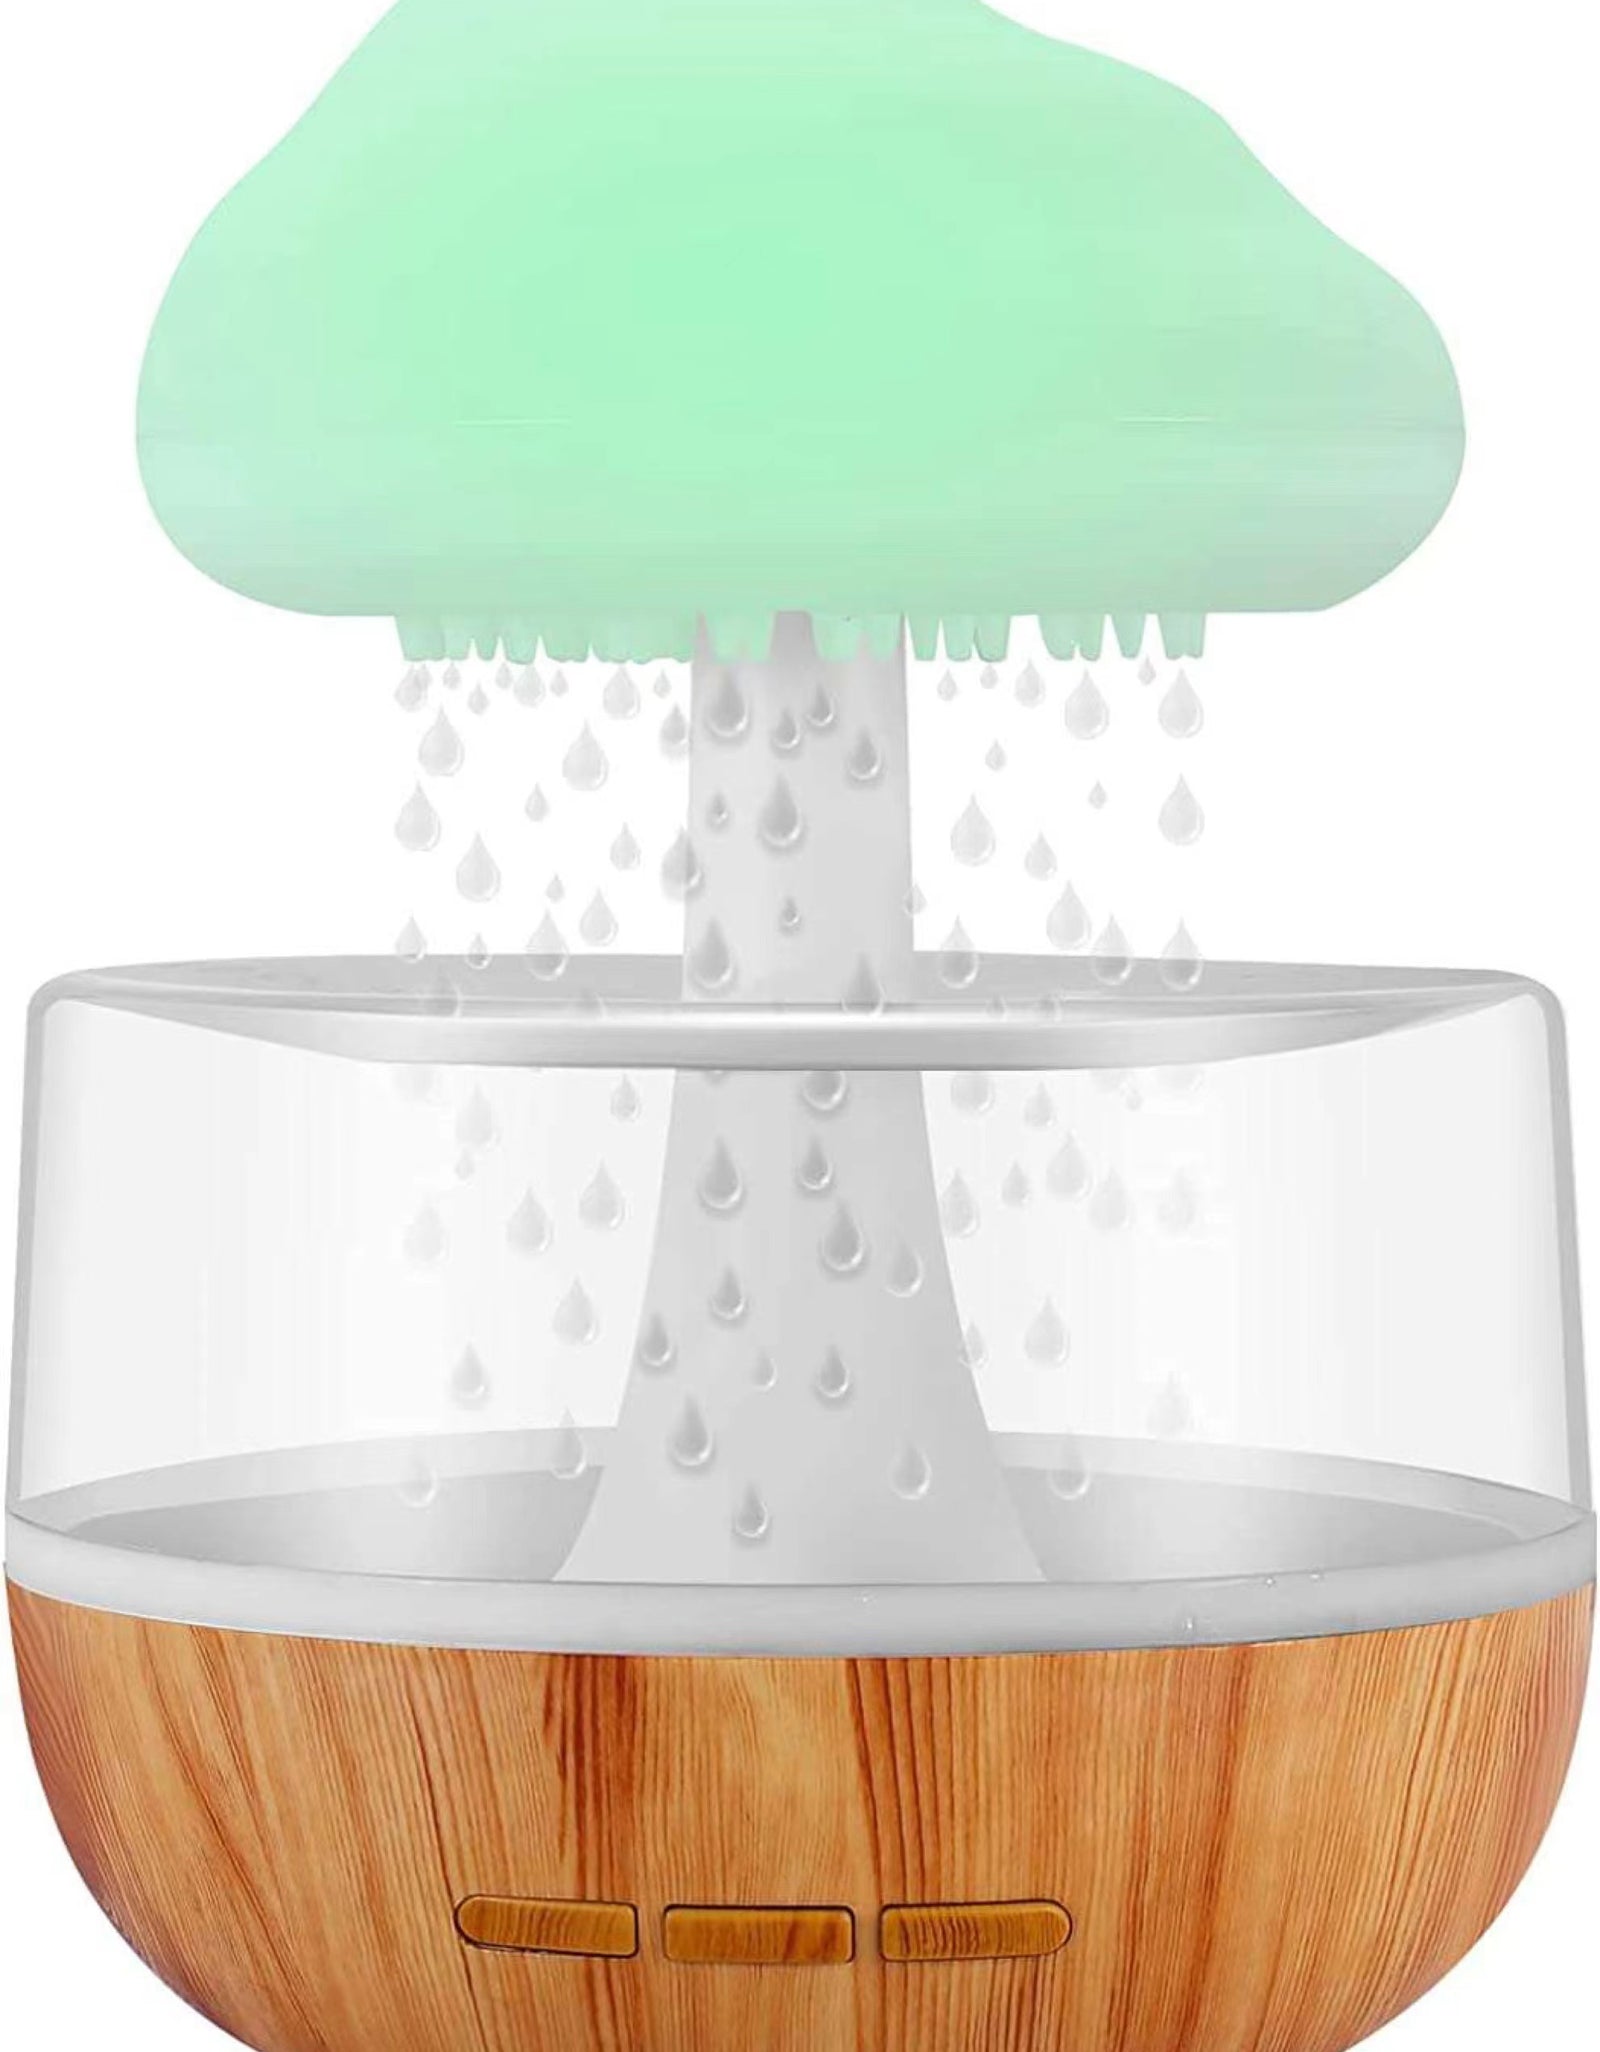 Rain Cloud Aroma Humidifier Raining Humidifier Water Drop Humidifier - TryKid